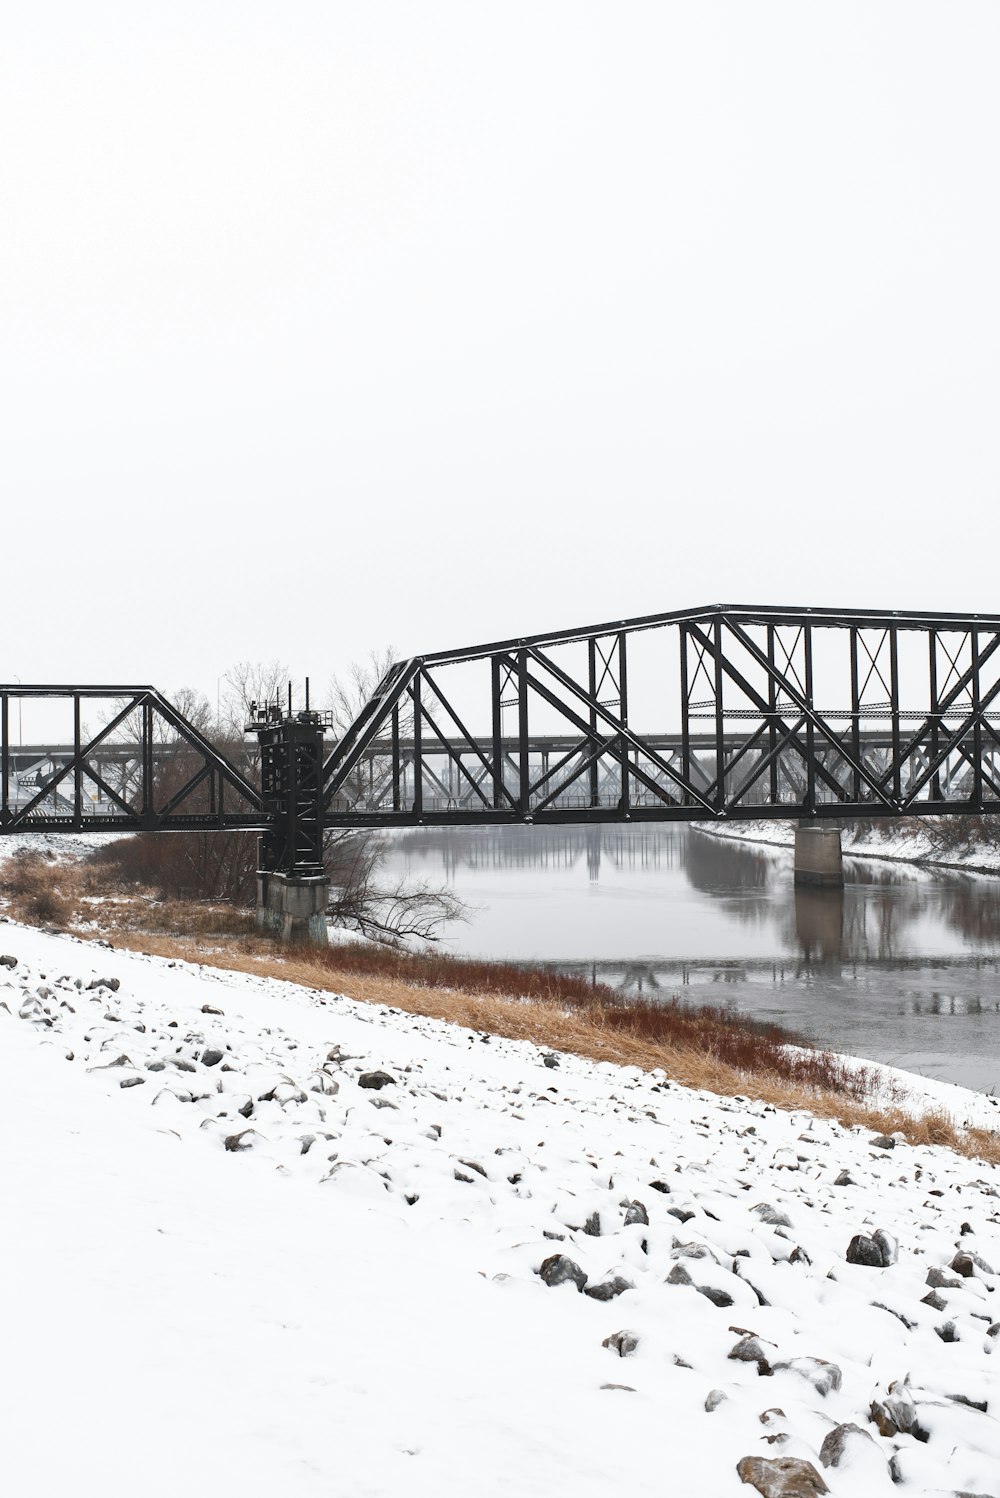 a train bridge over a frozen river in winter